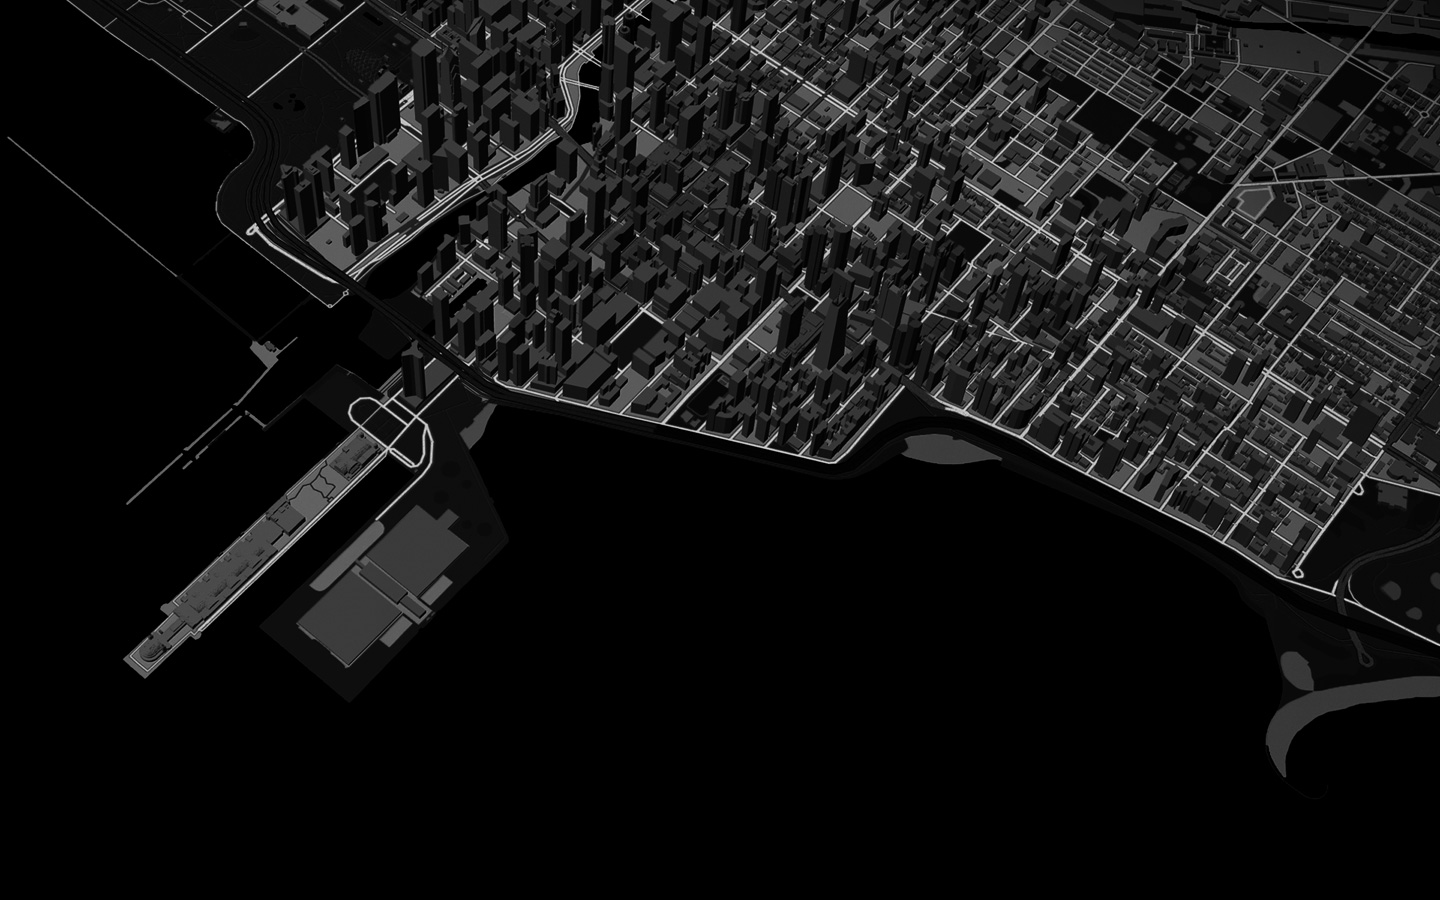 Animation montrant, dans une vue en 3D de Plans, une ligne correspondant à l’itinéraire suivi par une personne qui court dans une ville